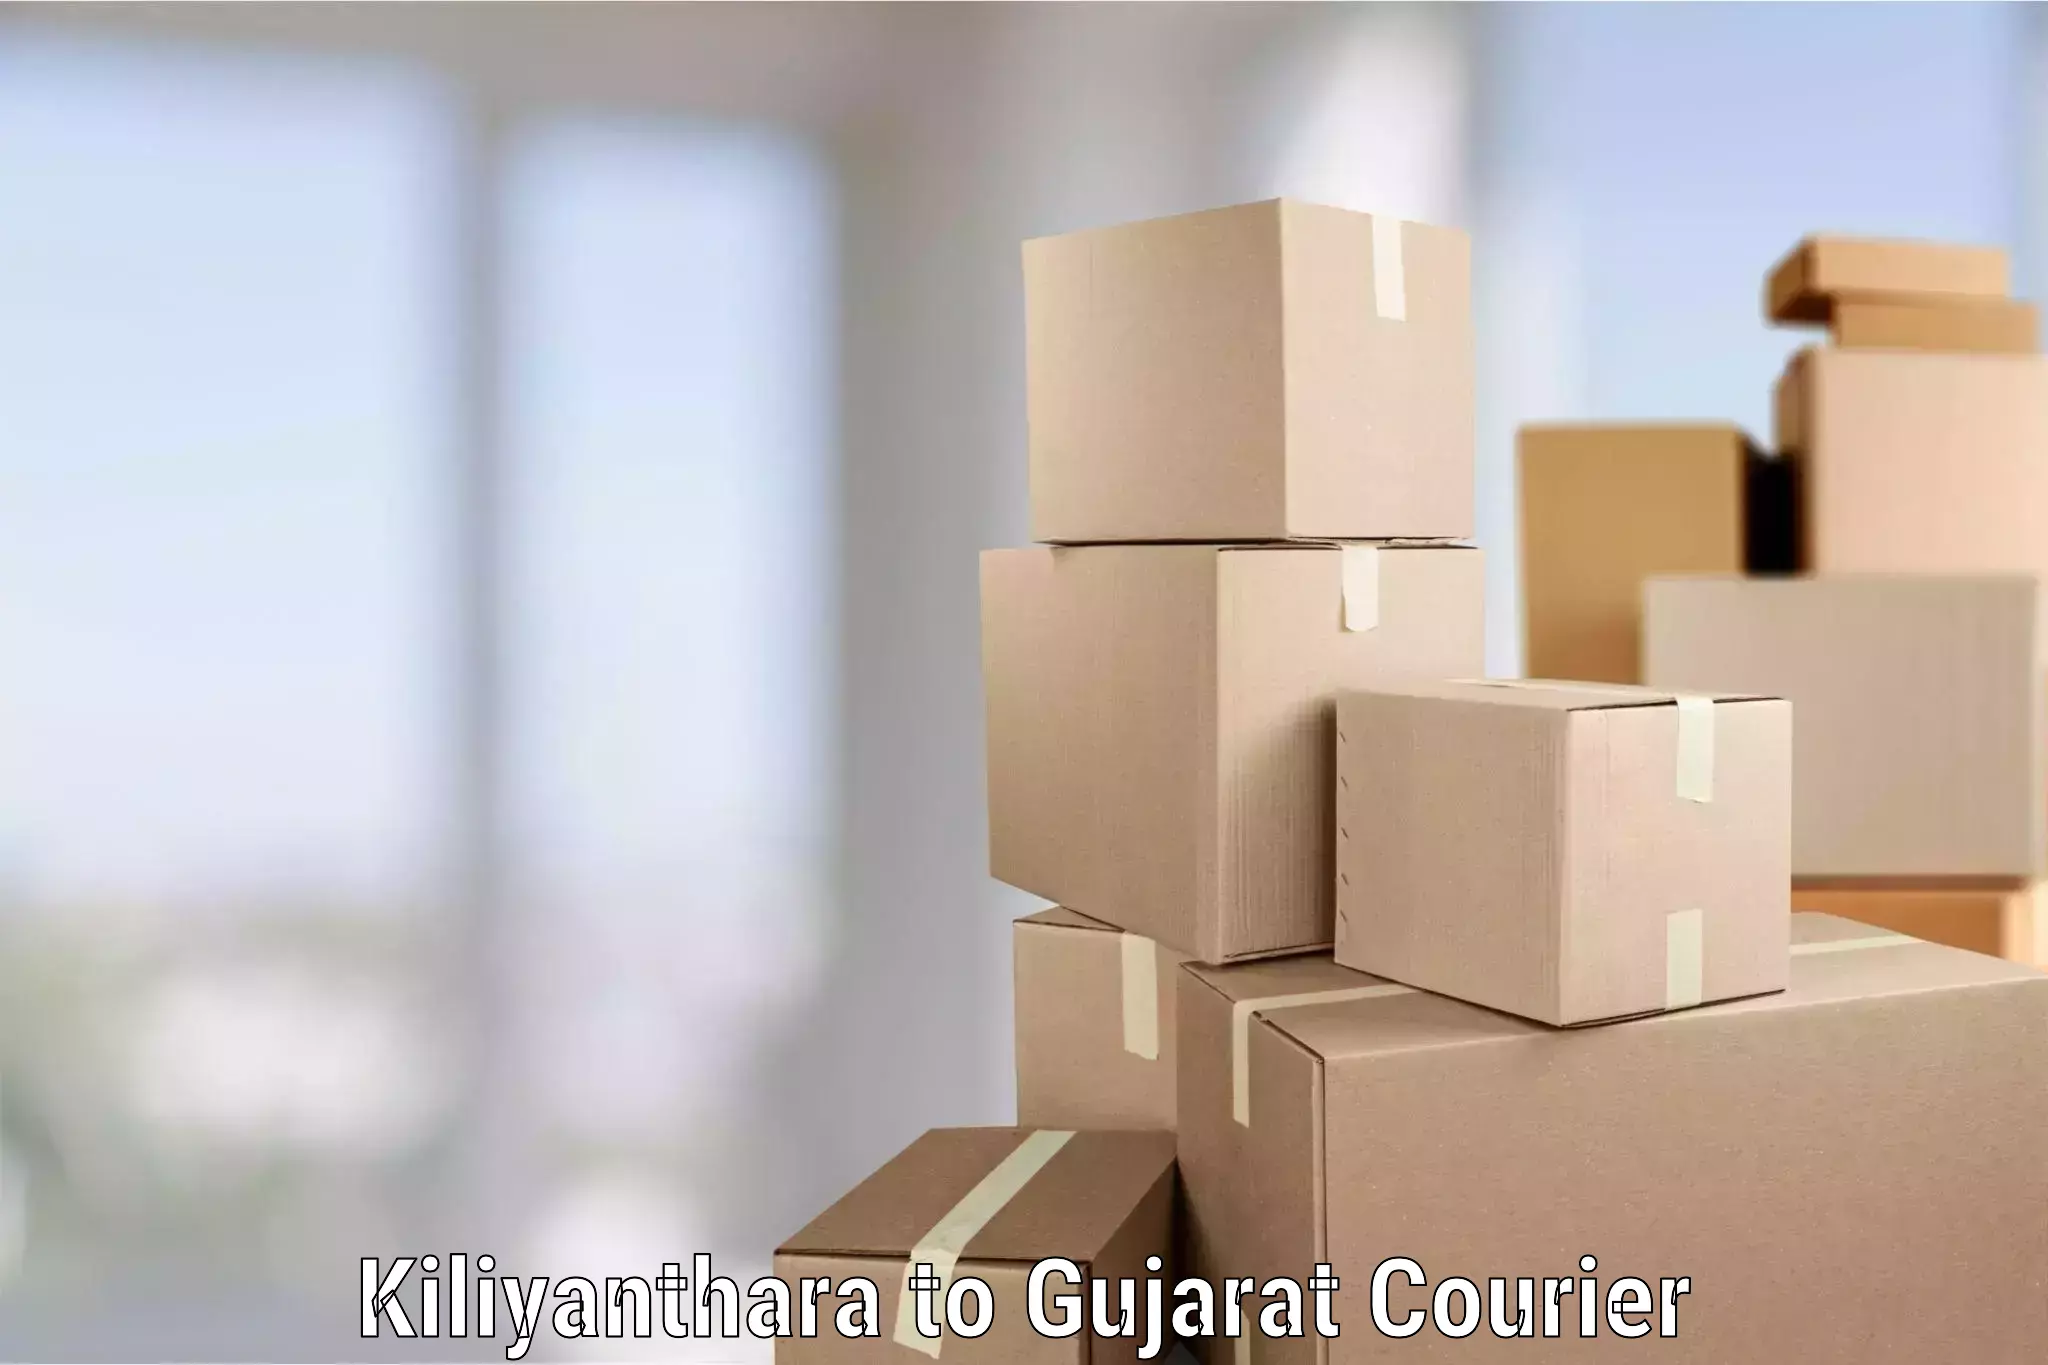 Professional furniture movers Kiliyanthara to Dhandhuka